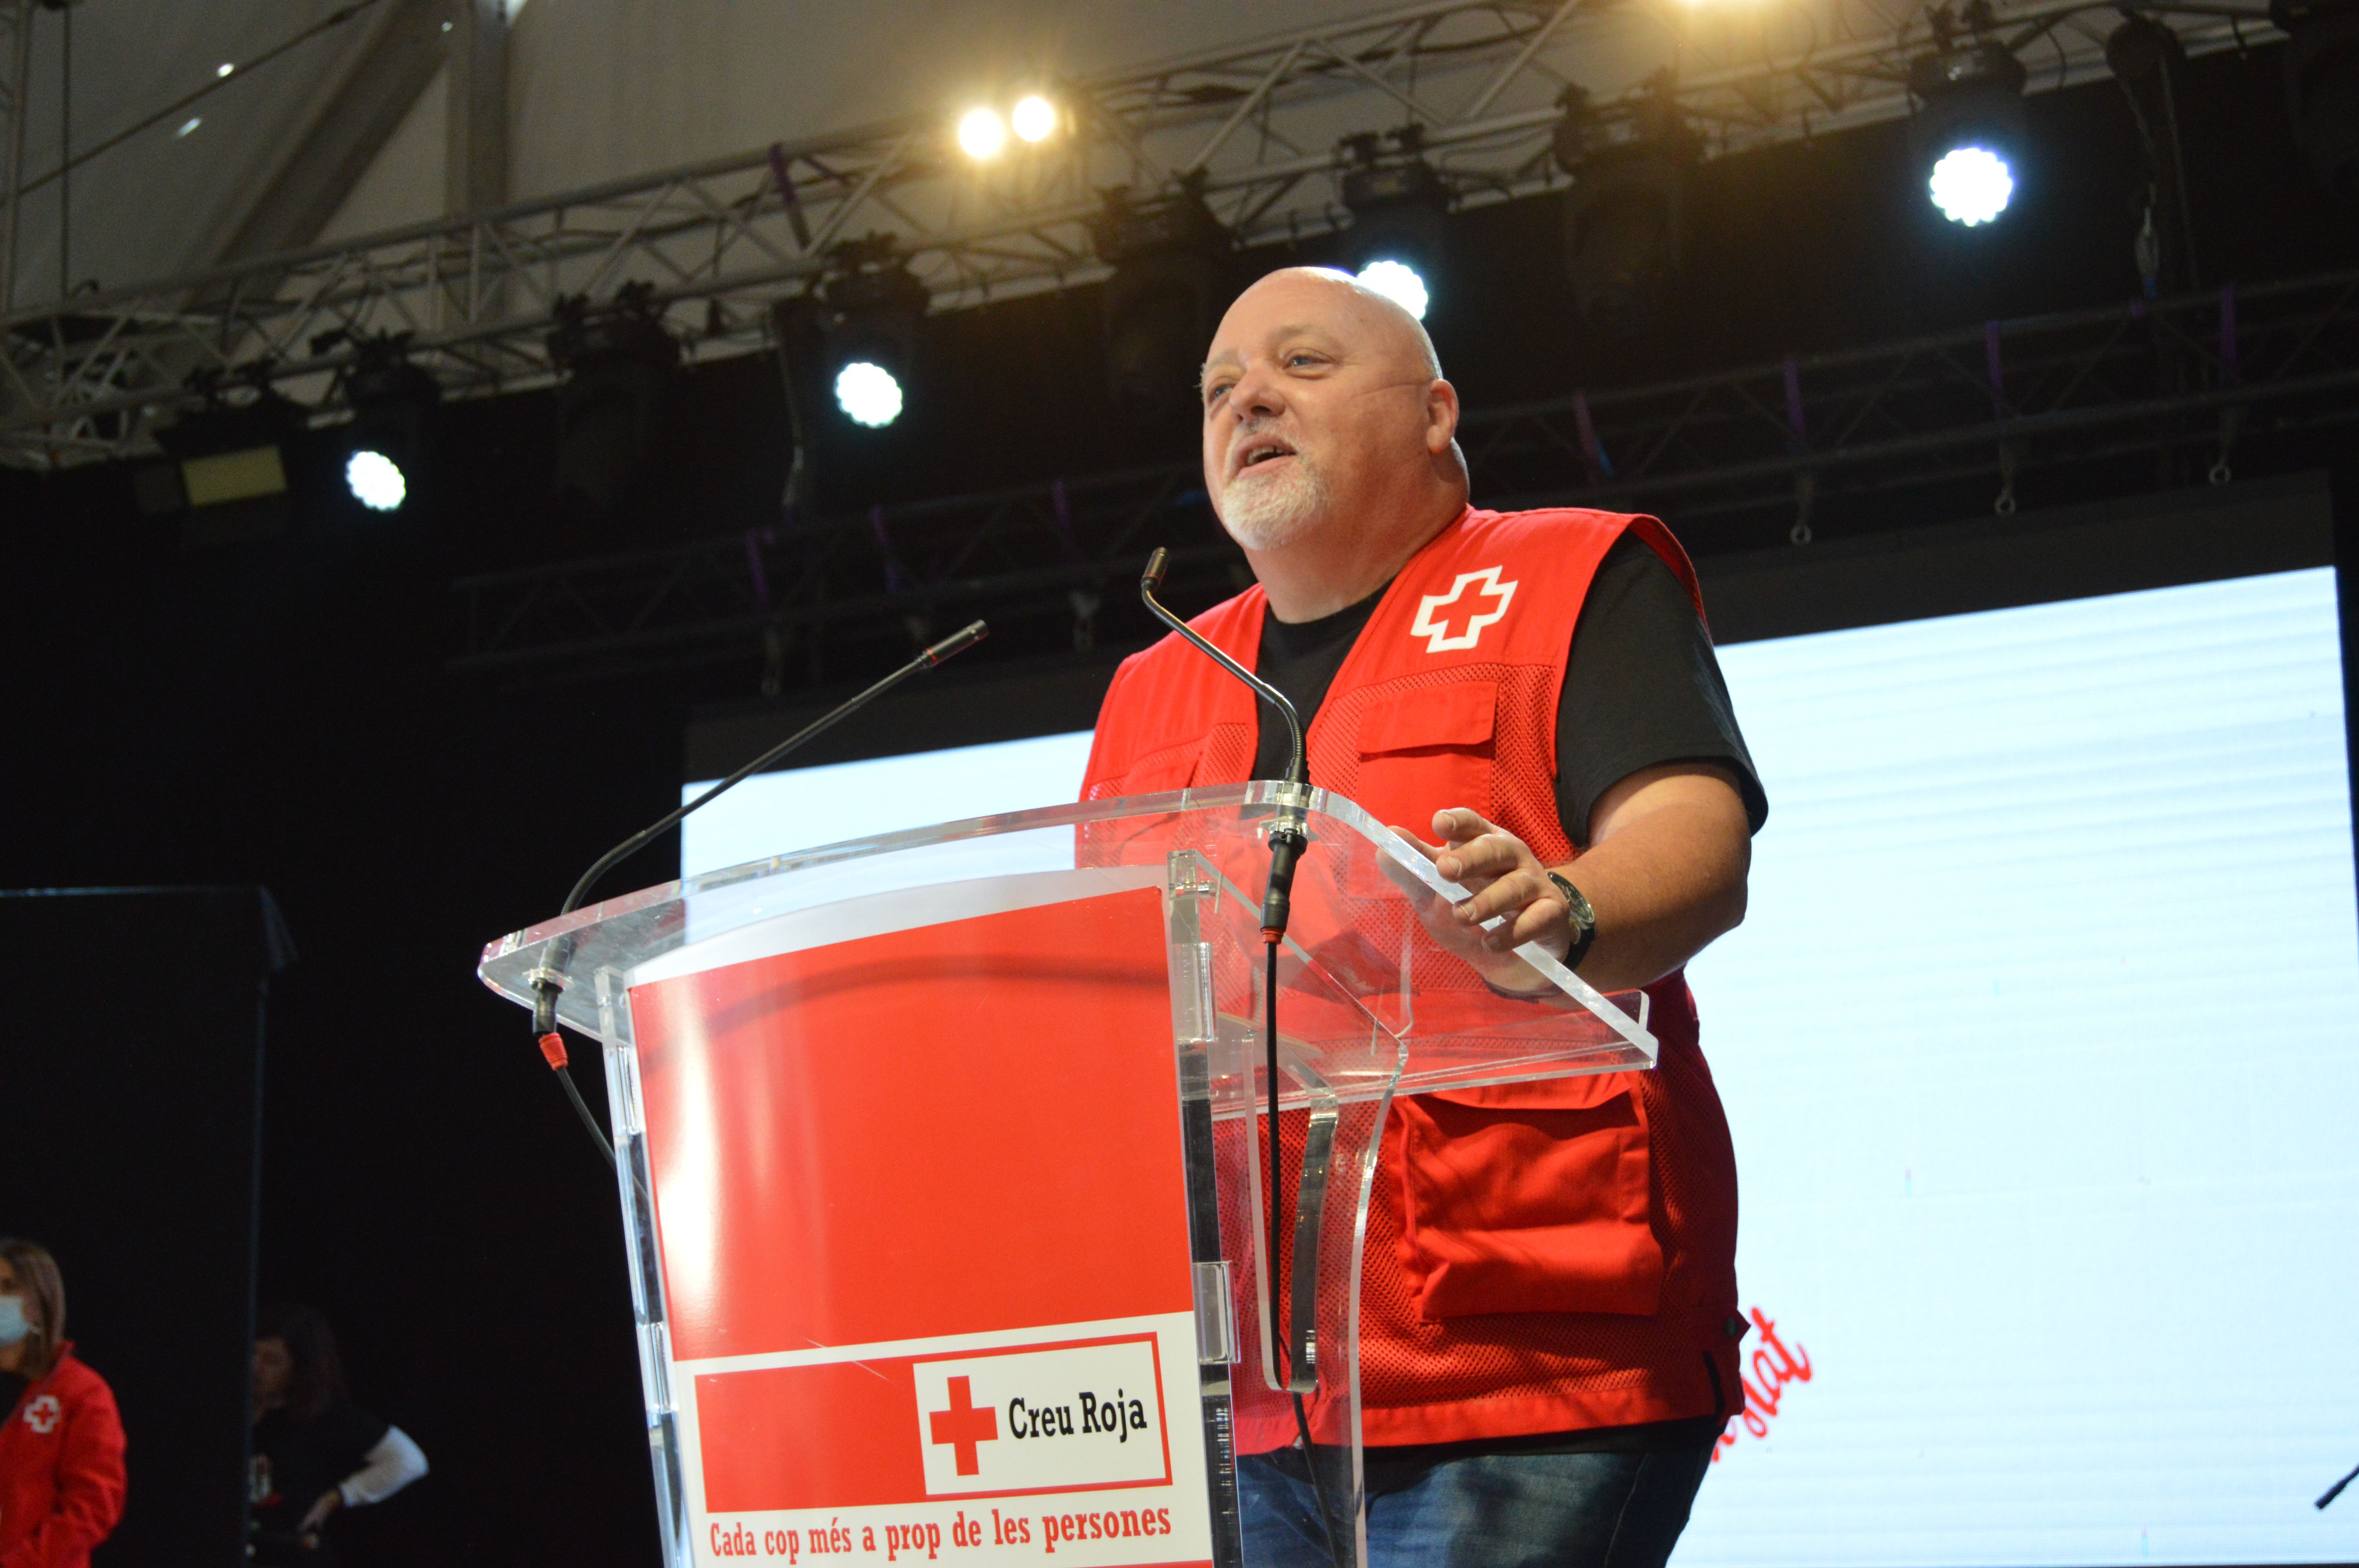 Santiago Morera, president de la Creu Roja. FOTO: Nora Muñoz Otero